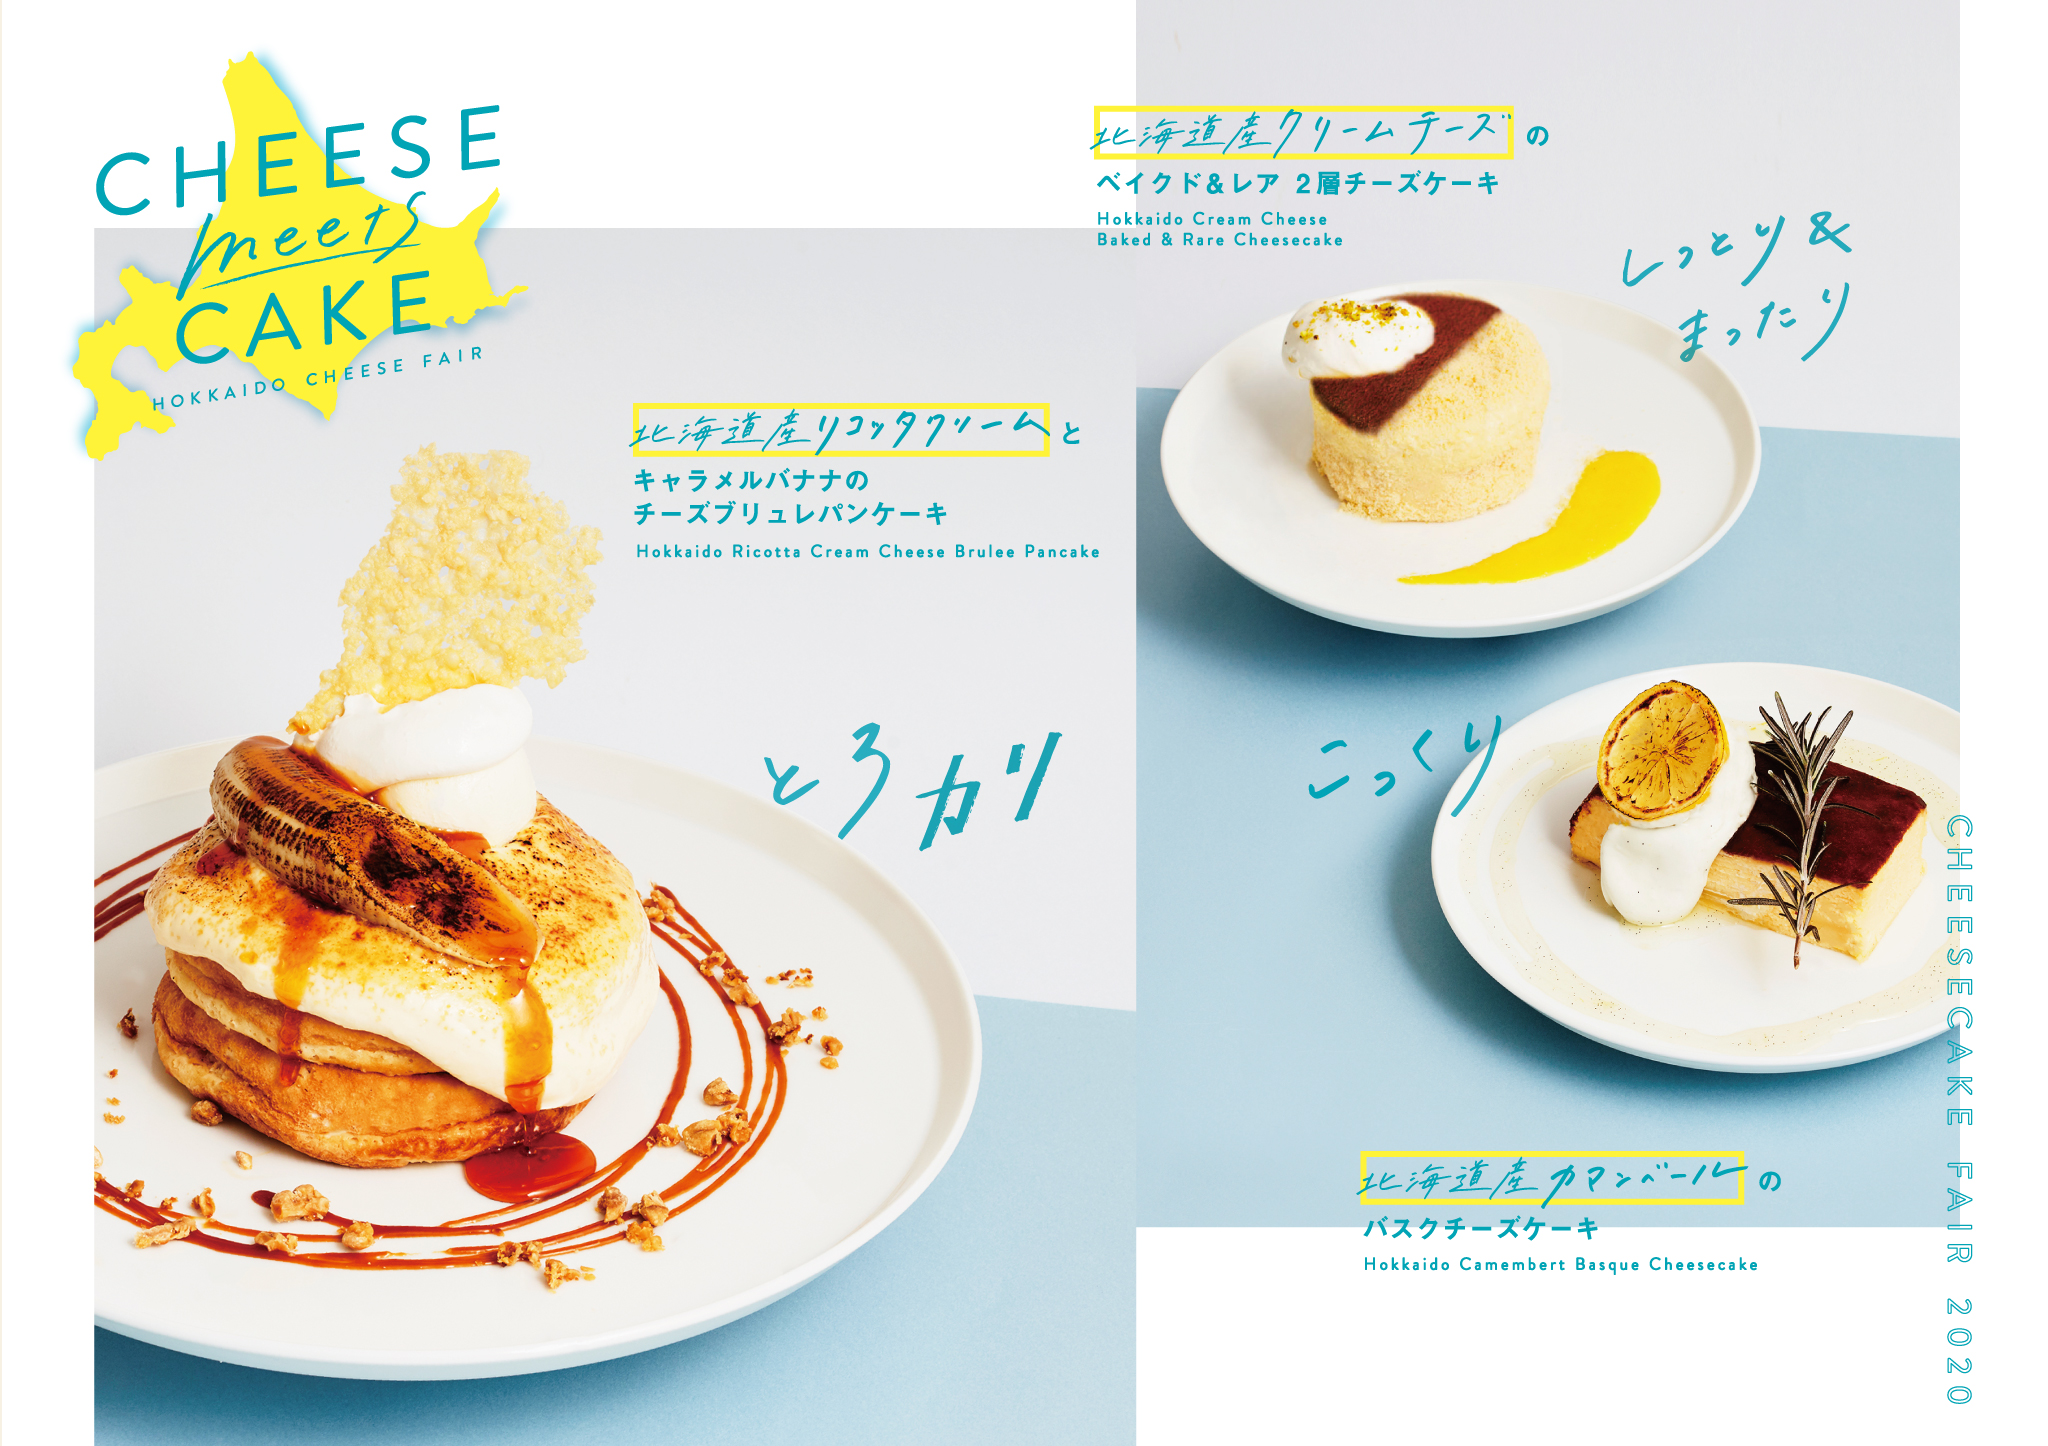 北海道産チーズたっぷり使用 とろカリ パンケーキ こっくり チーズケーキ 等 心地よい新食感を楽しめる進化系チーズデザート Cheese Meets Cake 新登場 コンテンポラリープランニングセンター Cpcenter のプレスリリース